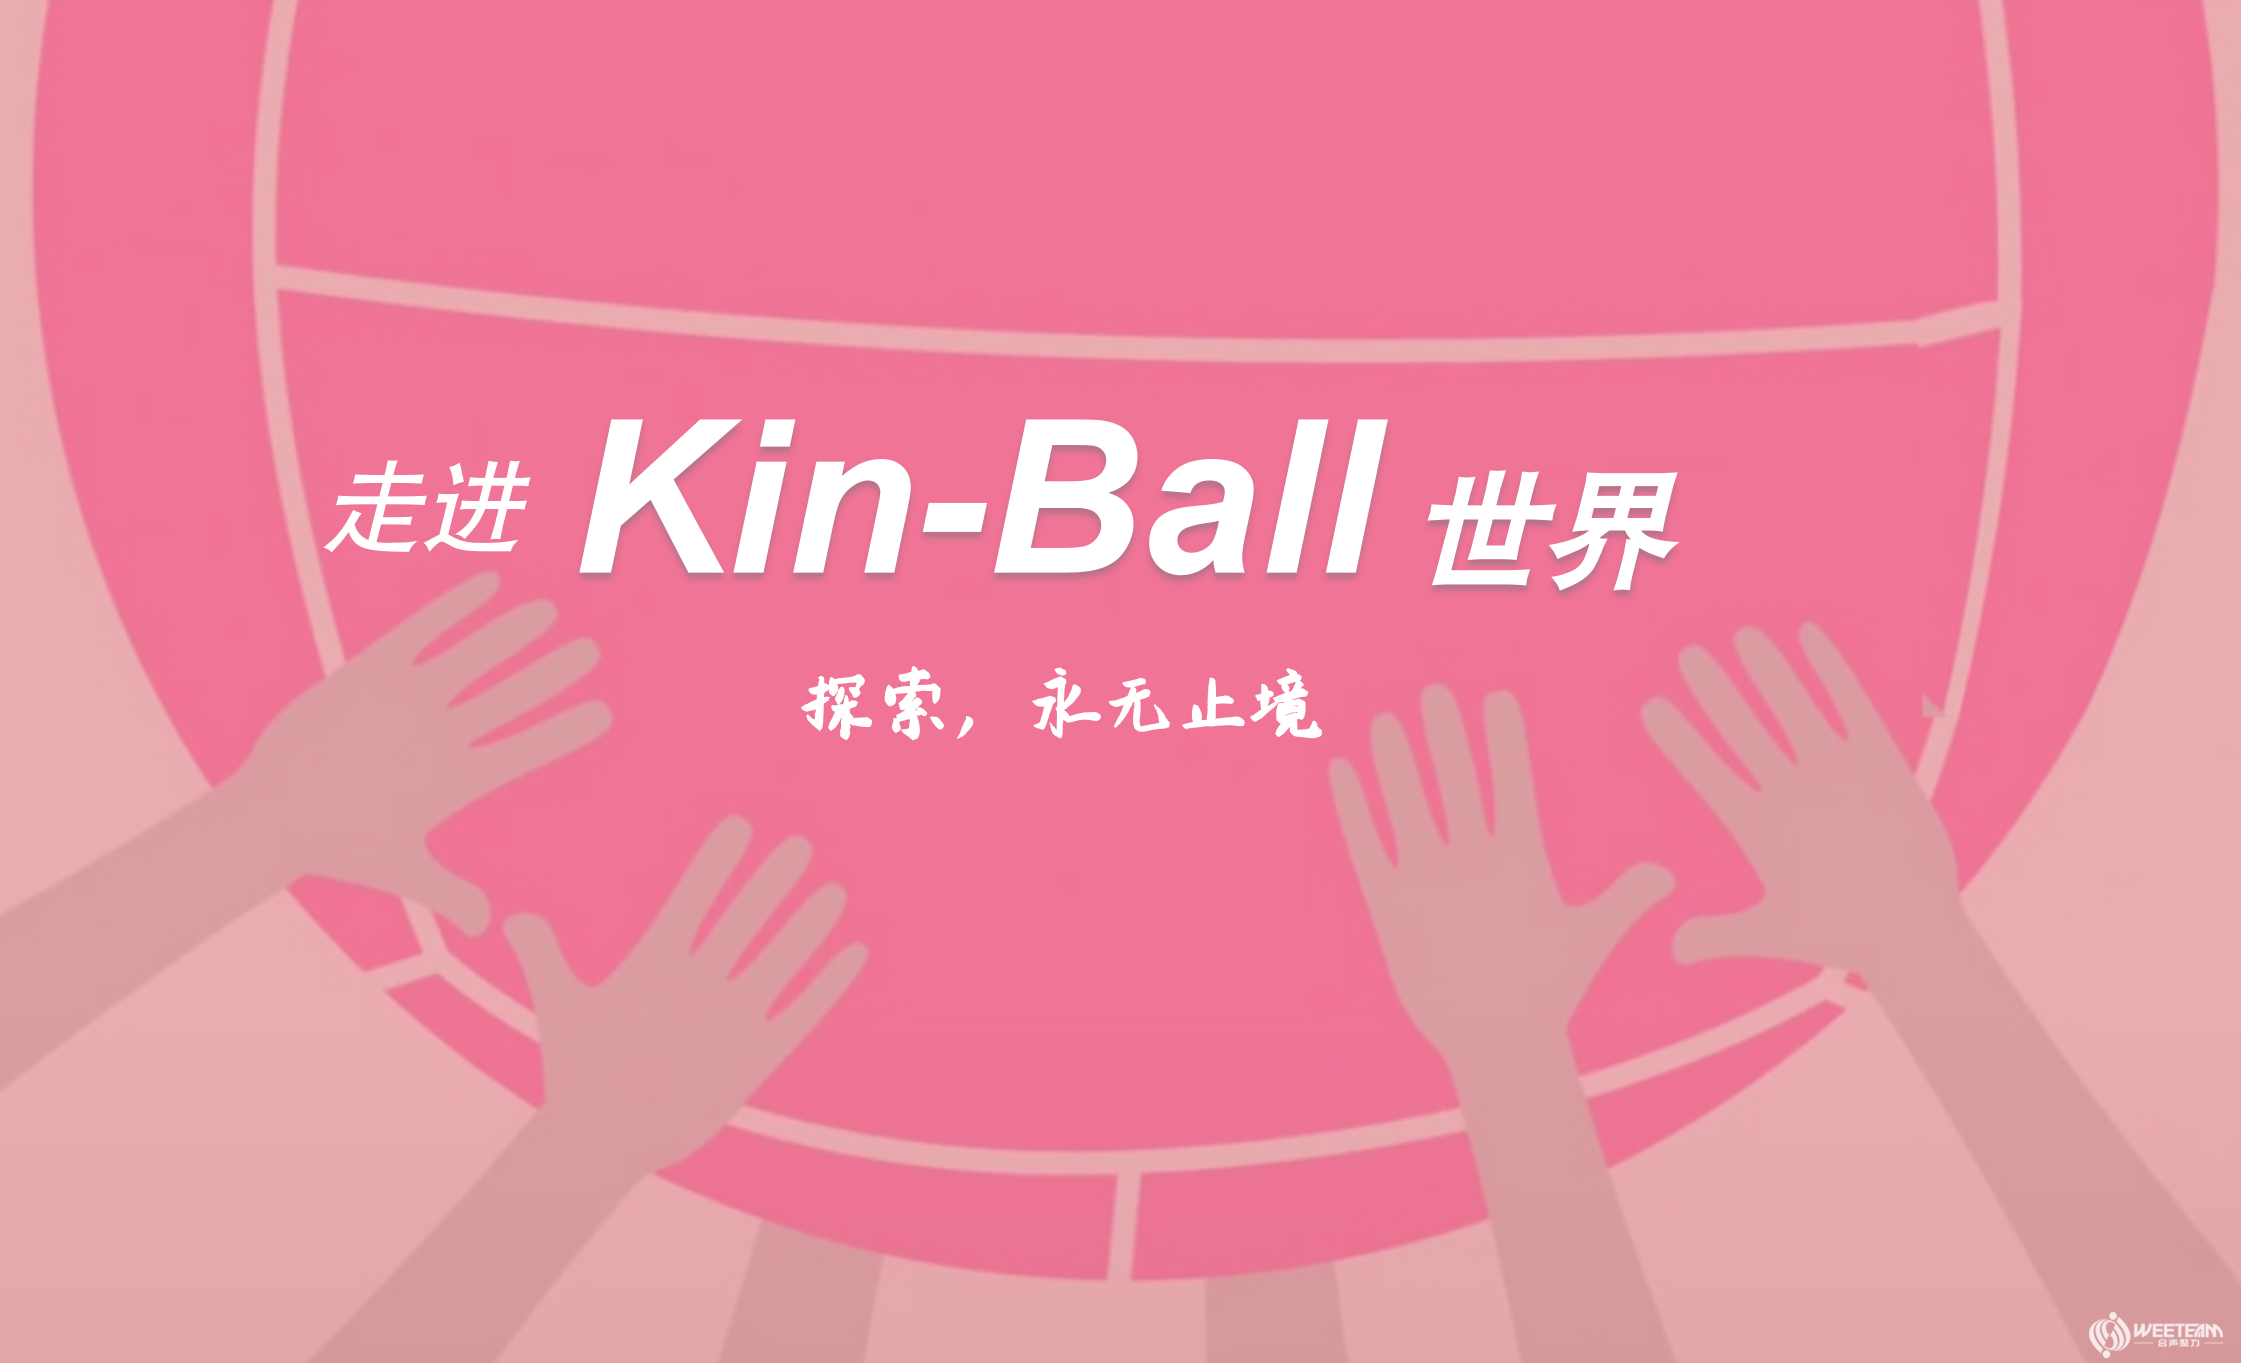 健球团建 Kin-Ball